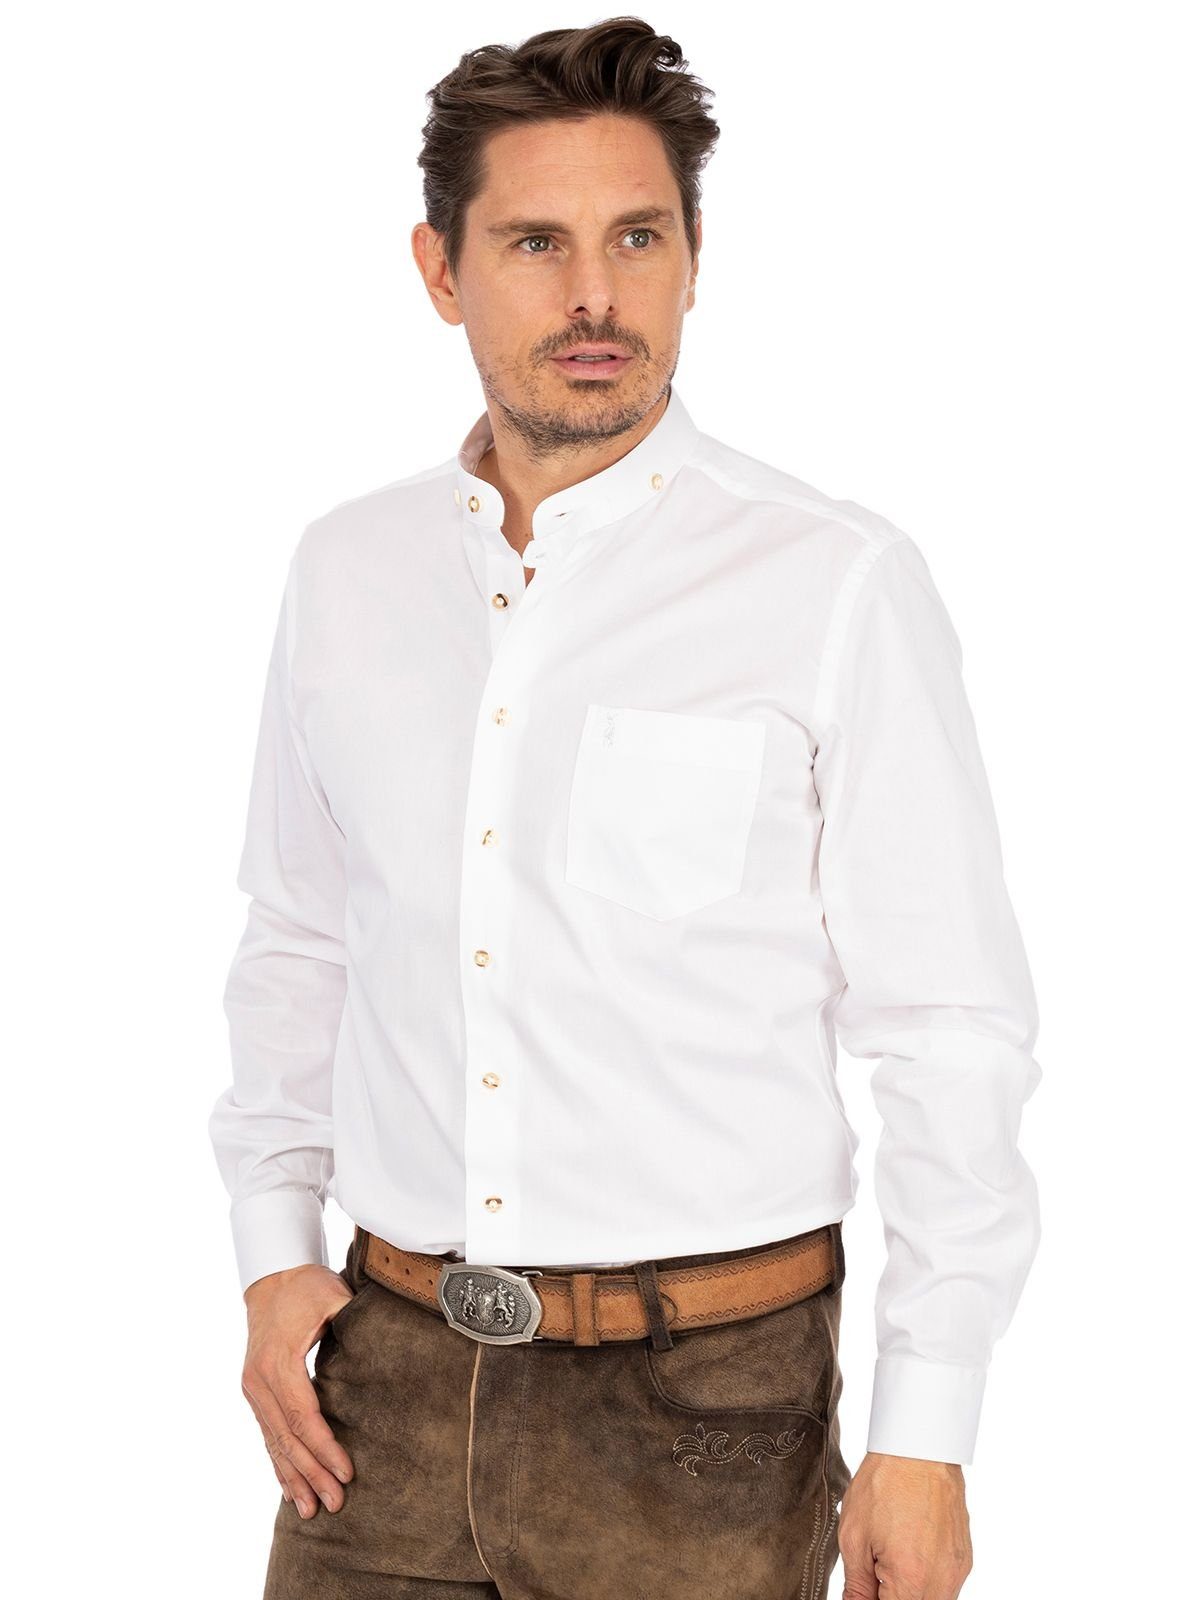 Almsach LF133 Hemd Stehkragen weiß Trachtenhemd Fit) (Slim